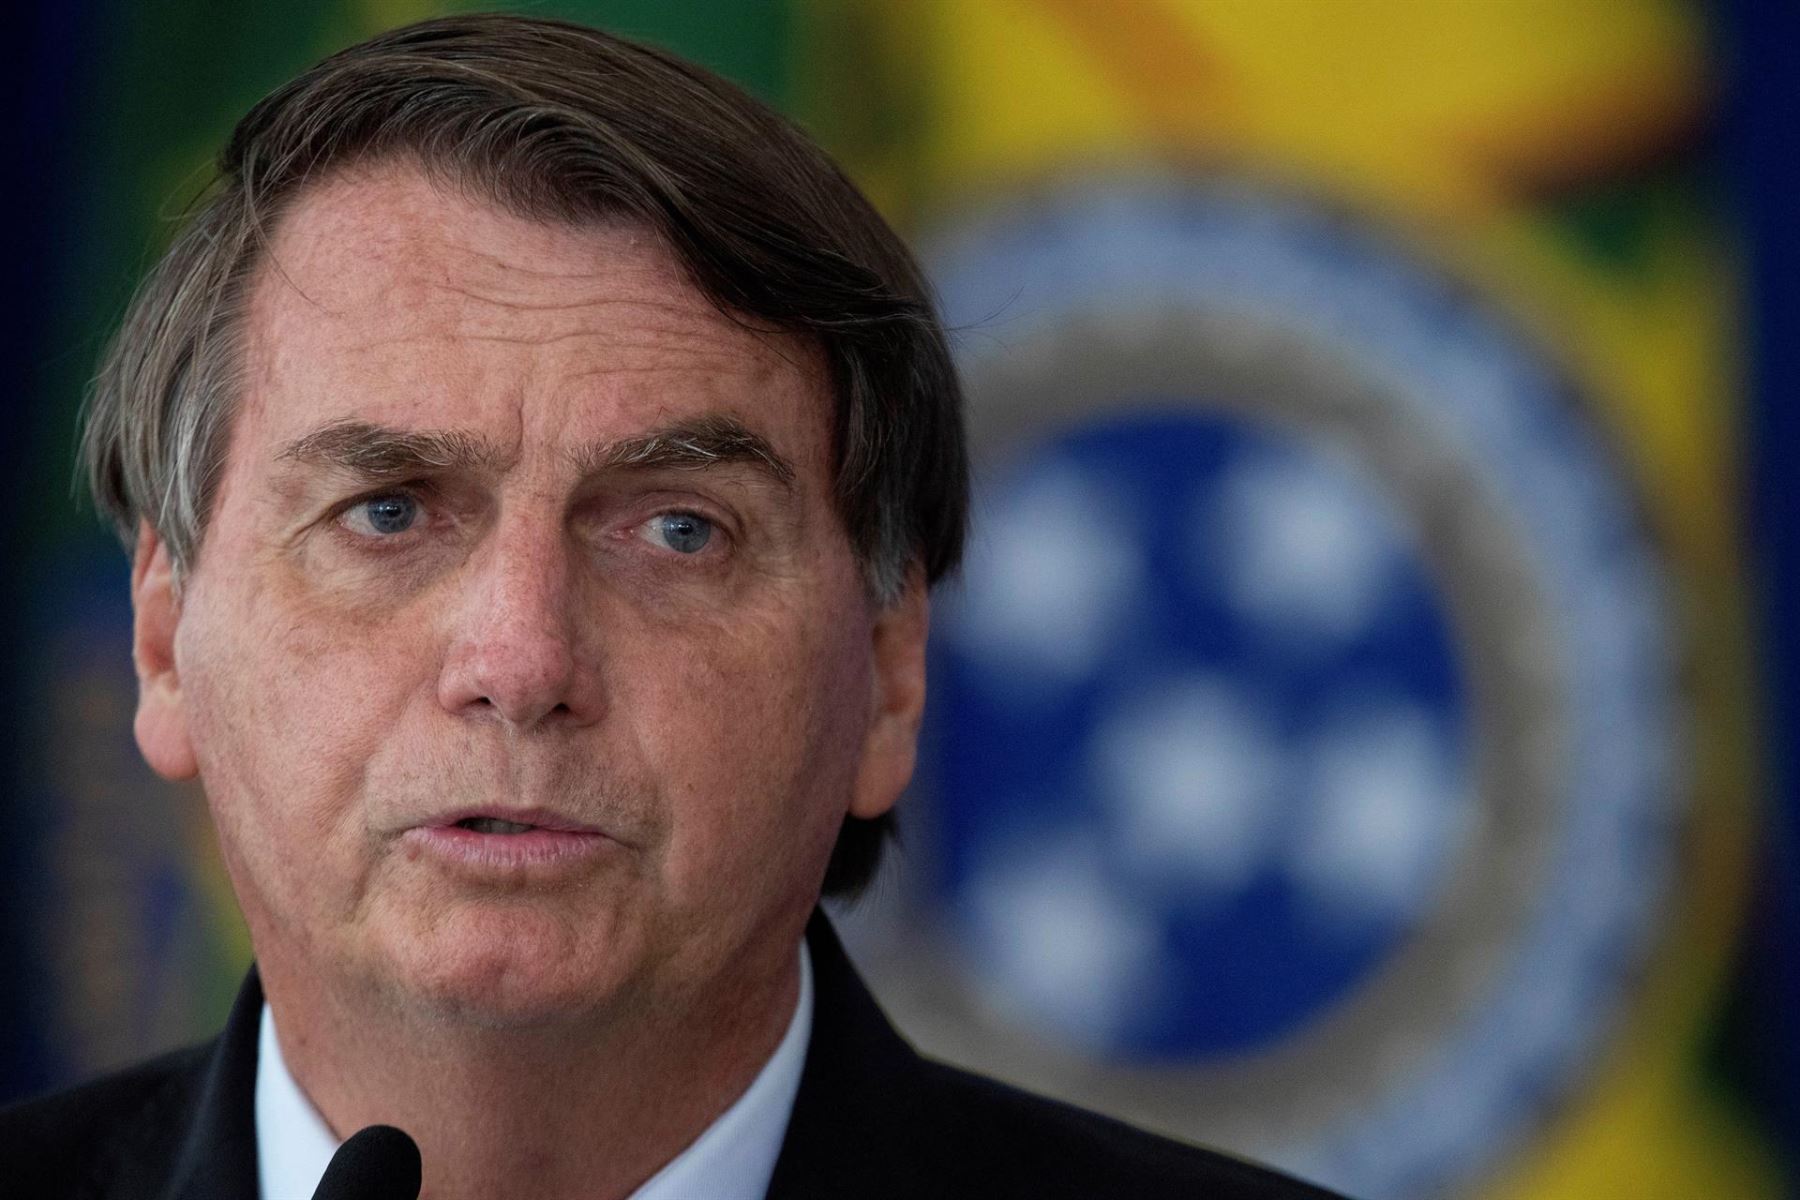 Jair Bolsonaro es internado para permanecer en observación tras ataque de hipo y fuertes dolores abdominales.